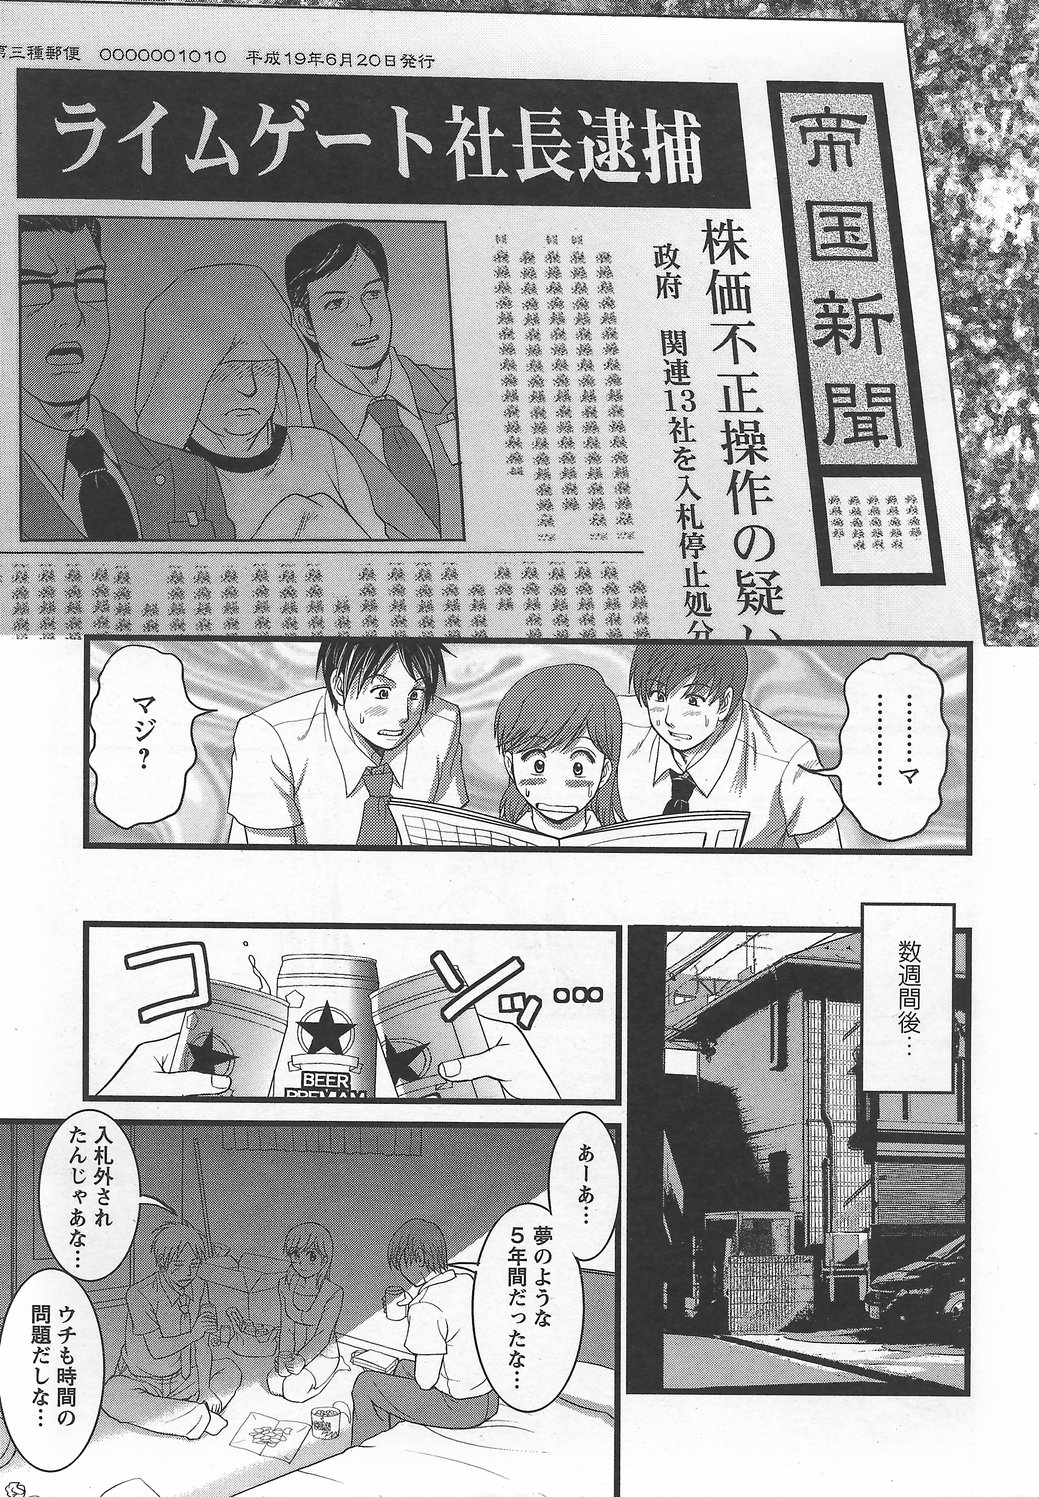 Haken no Muuko-san 6 [Saigado] page 10 full